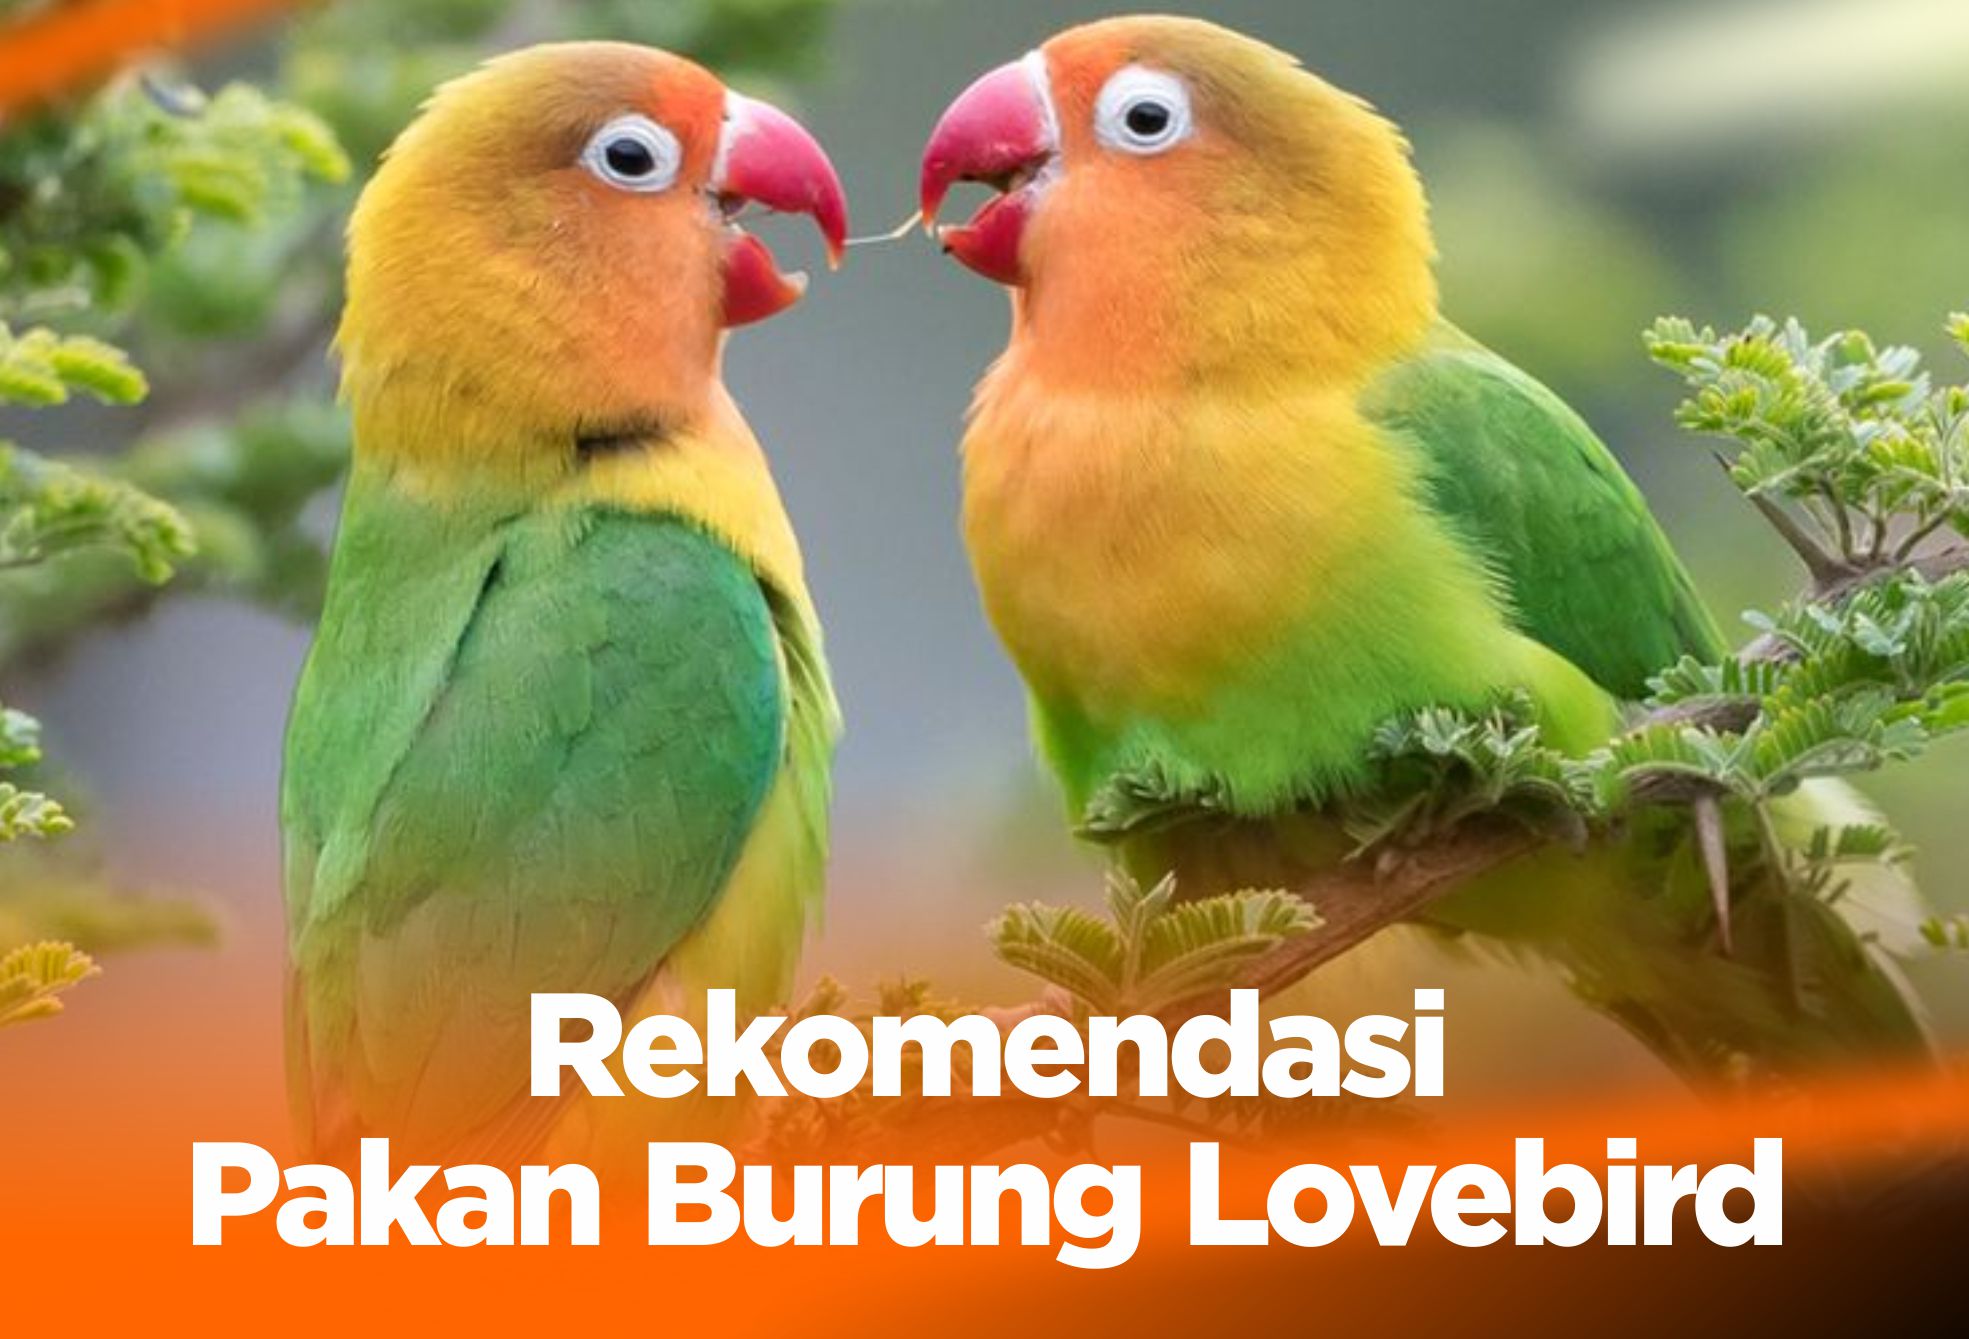 10 Rekomendasi Pakan Burung Lovebird, Biar Makin Gacor!